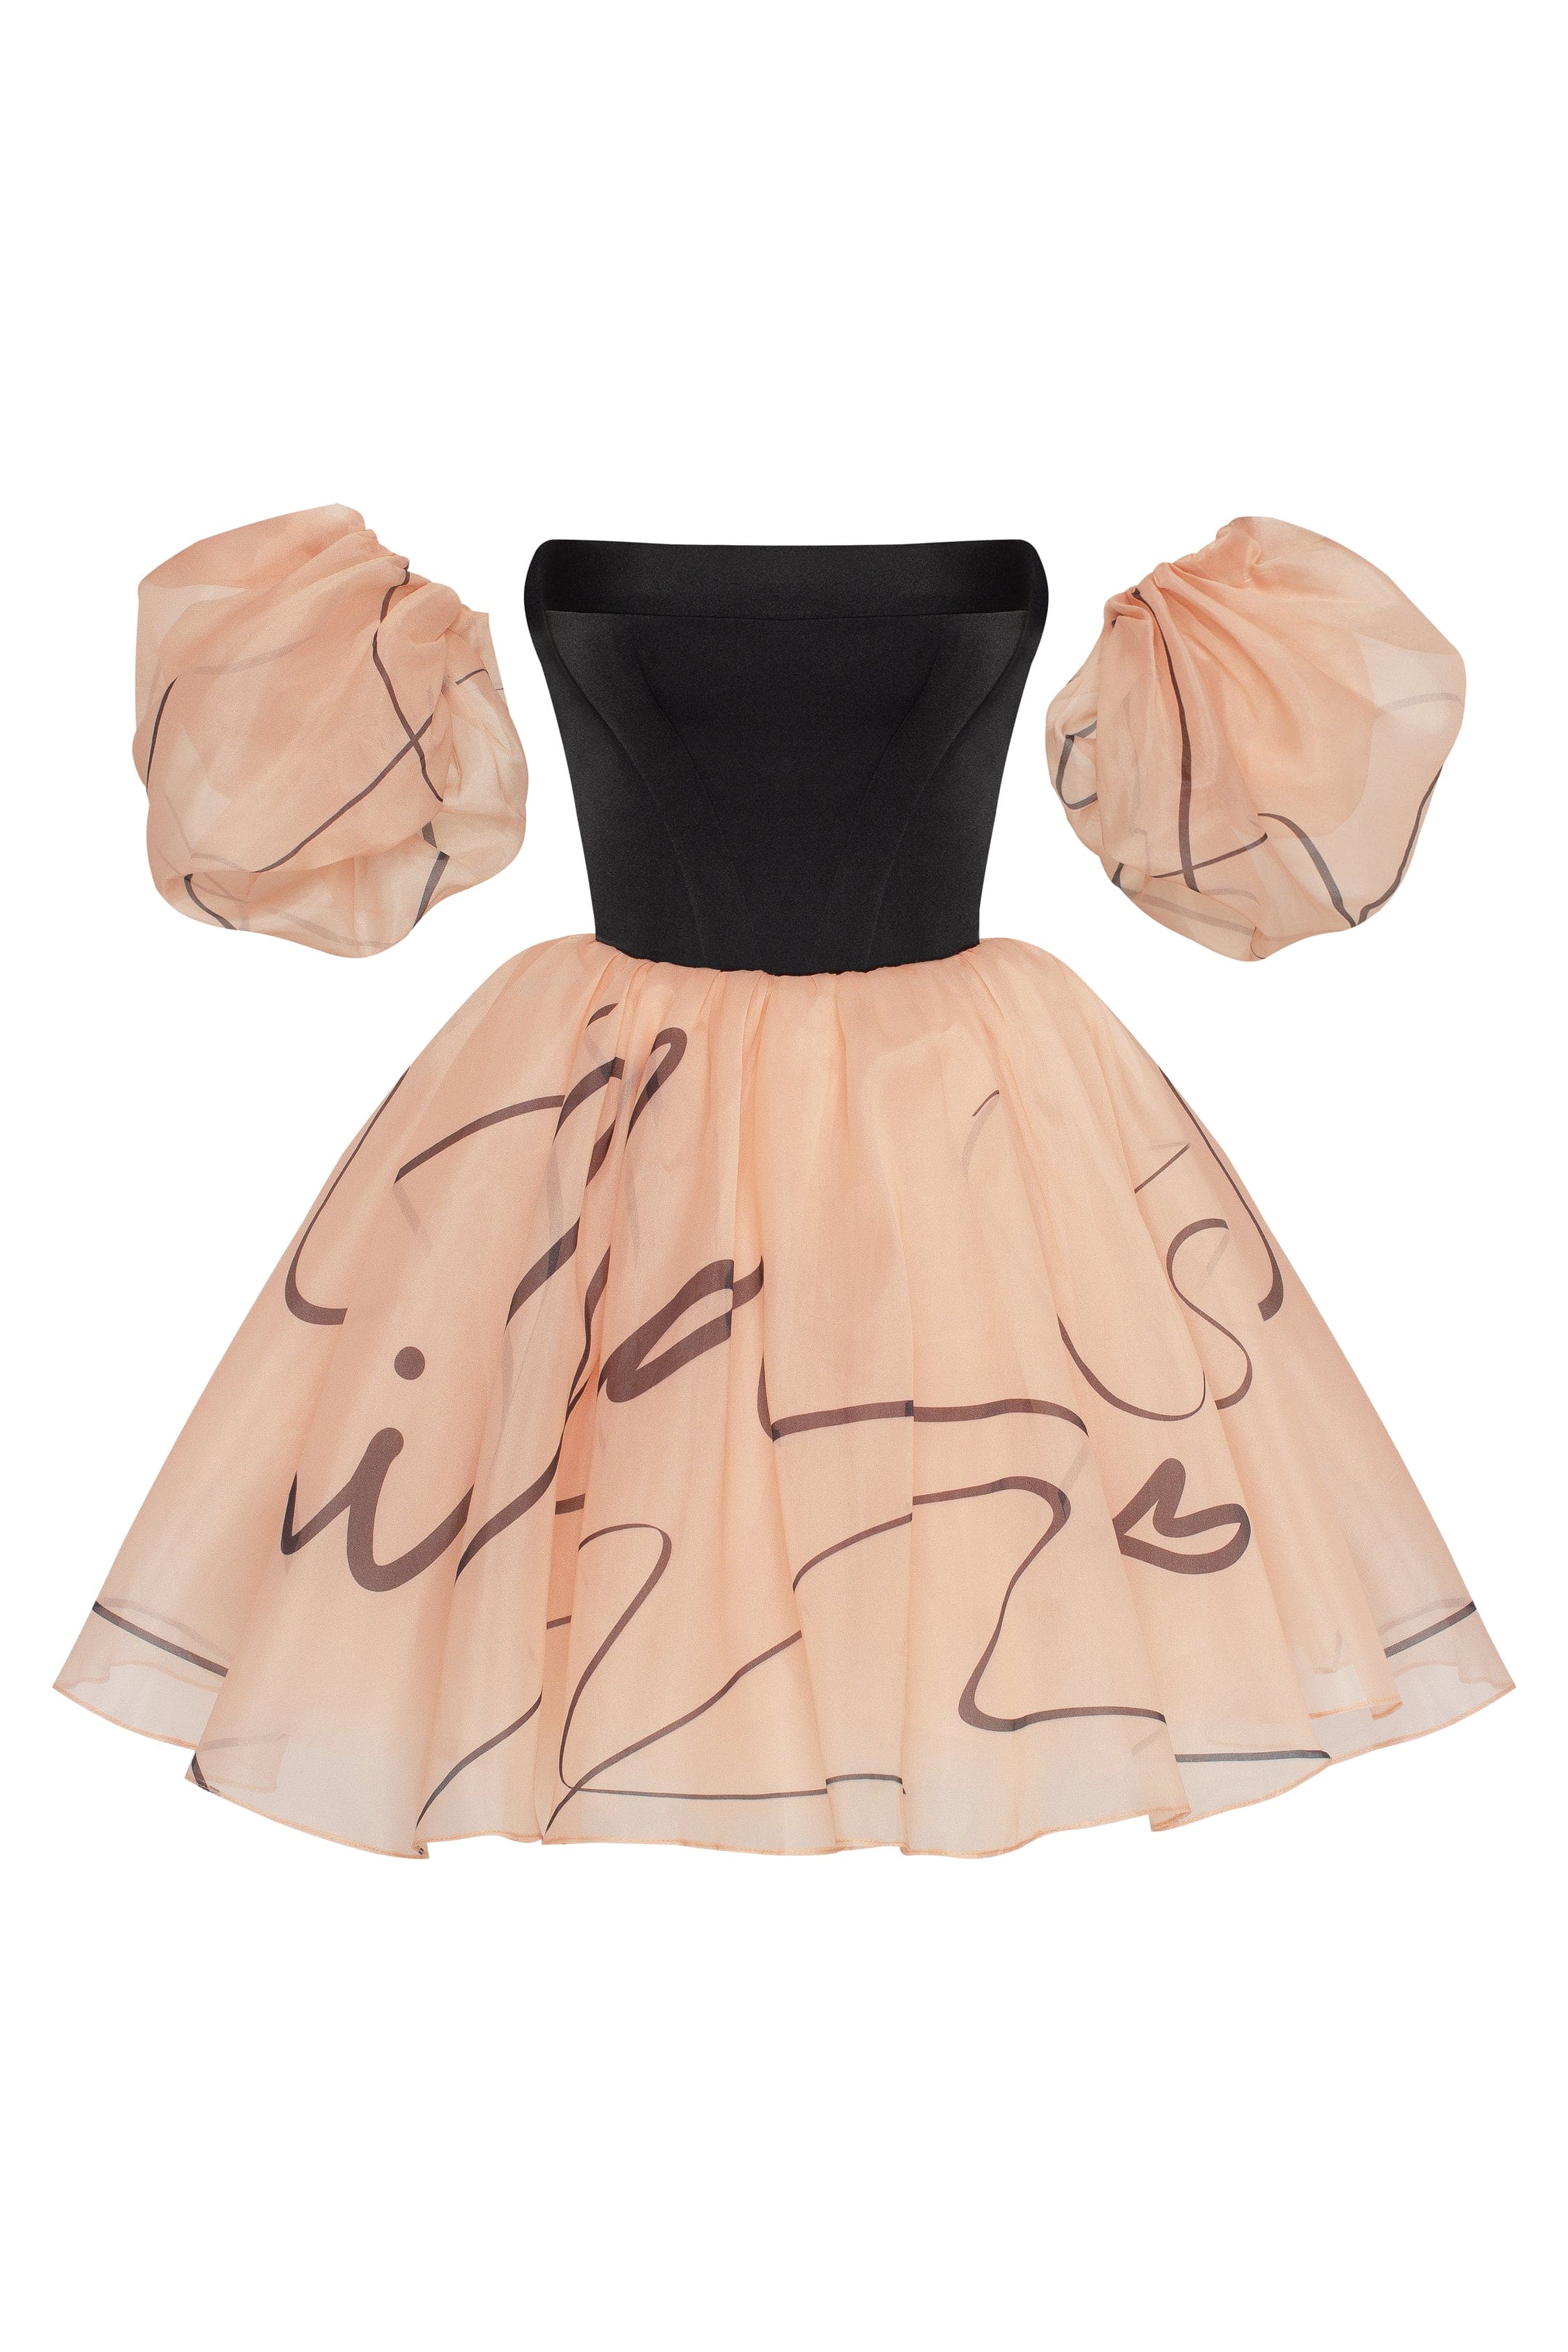 Puffy mini dress with Milla's signature, Xo Xo